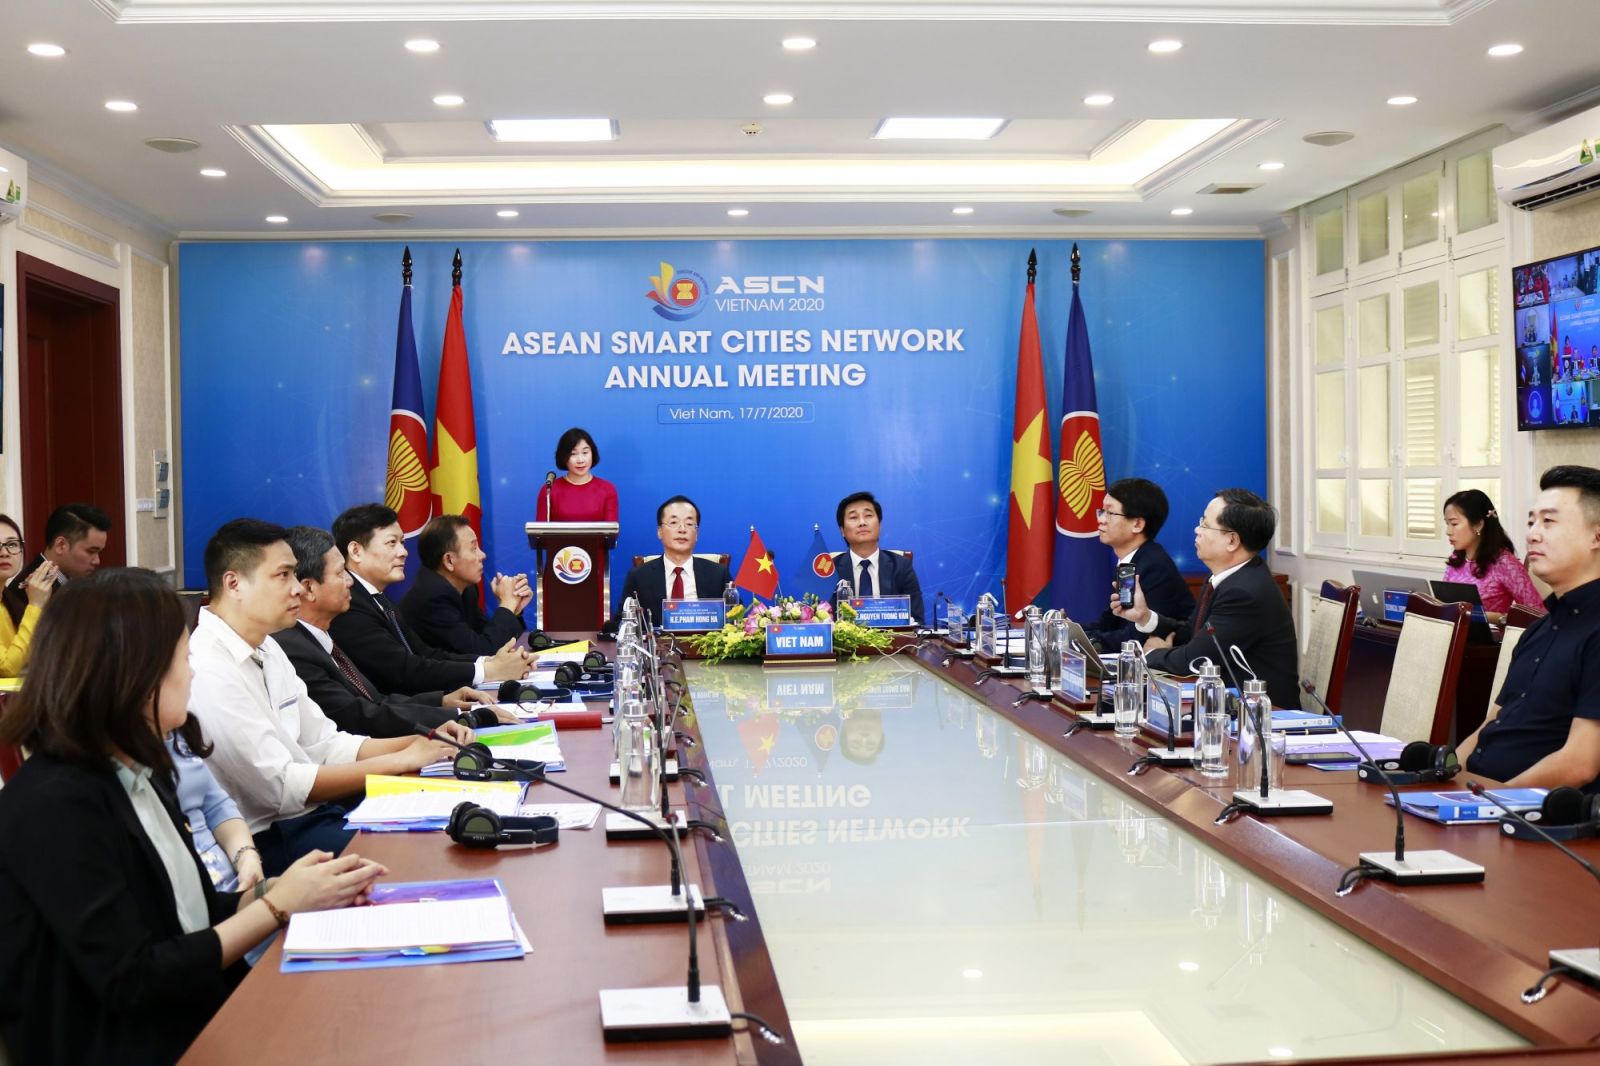 Phiên khai mạc Hội nghị thường niên năm 2020 mạng lưới đô thị thông minh ASEAN.